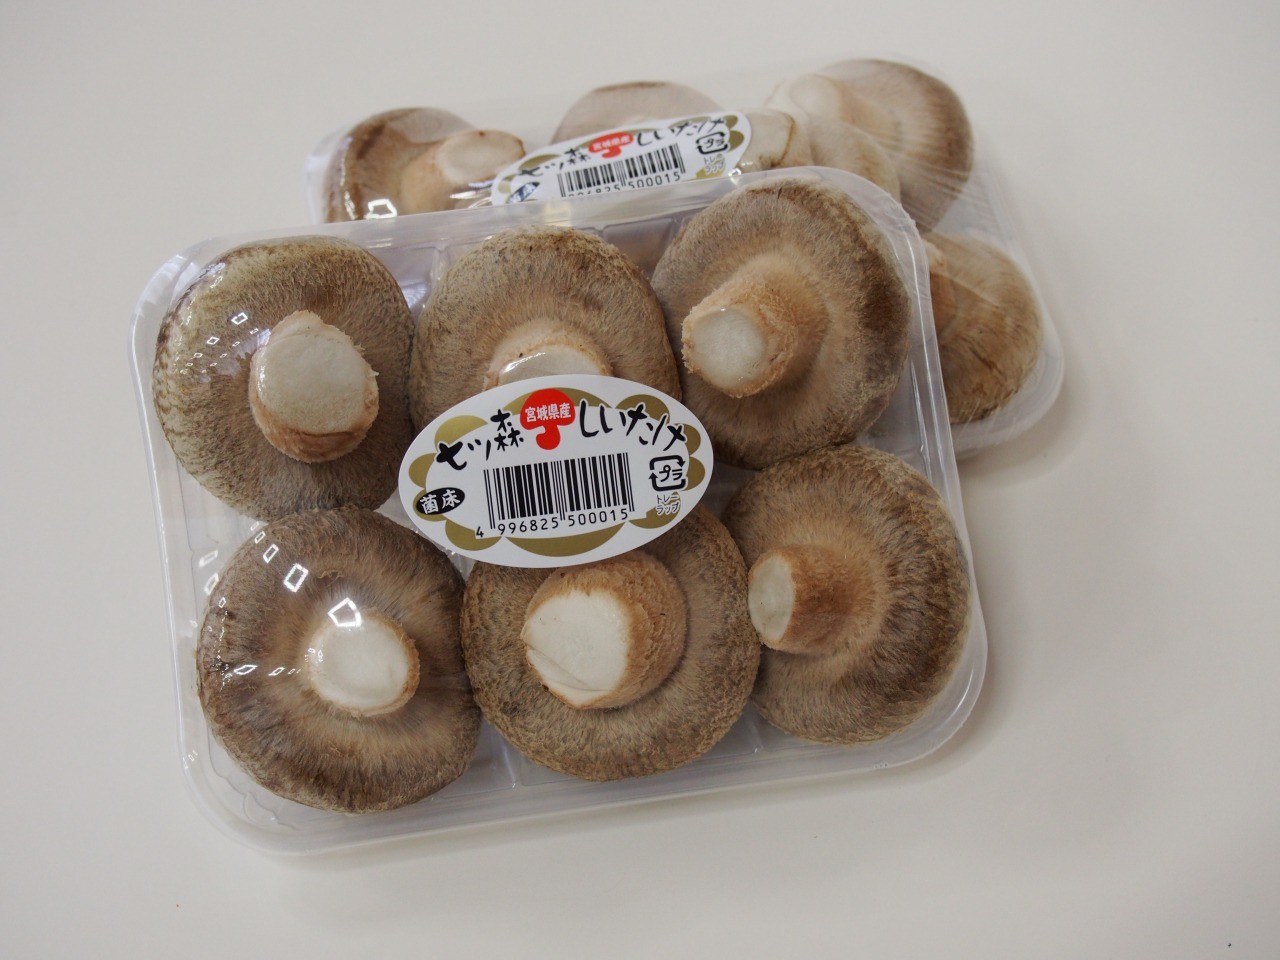 Nanatsumori Shiitake mushrooms